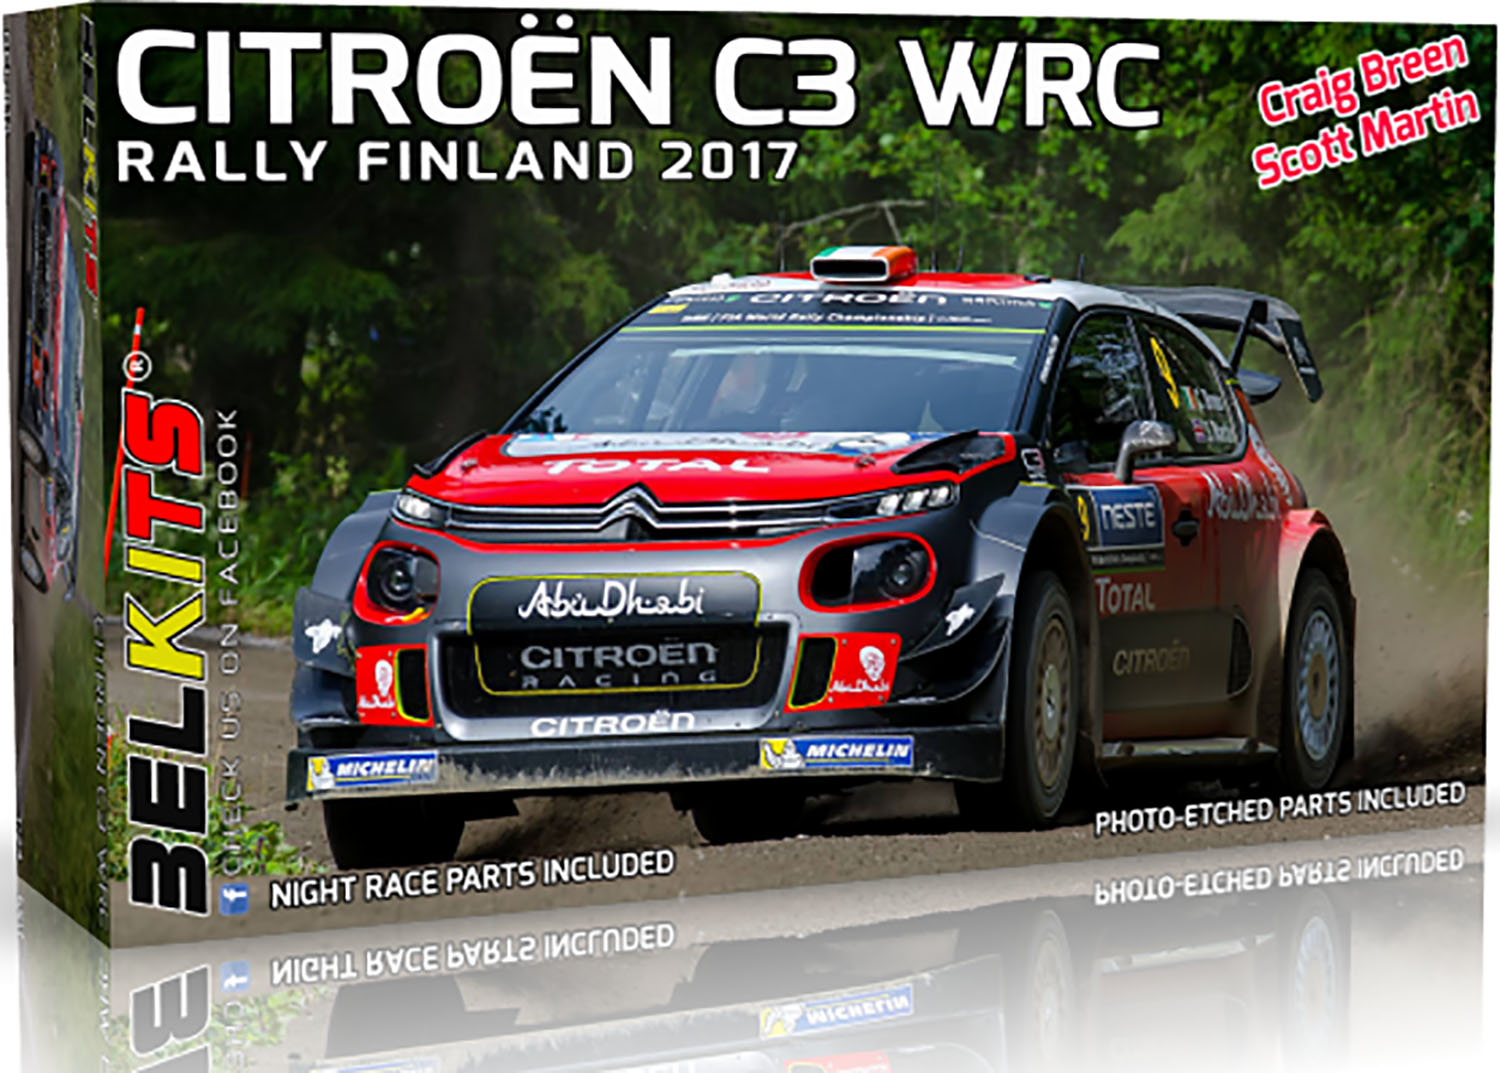 1/24 CITROEN C3 WRC FINLAND RALLY 2017 G.BREEN